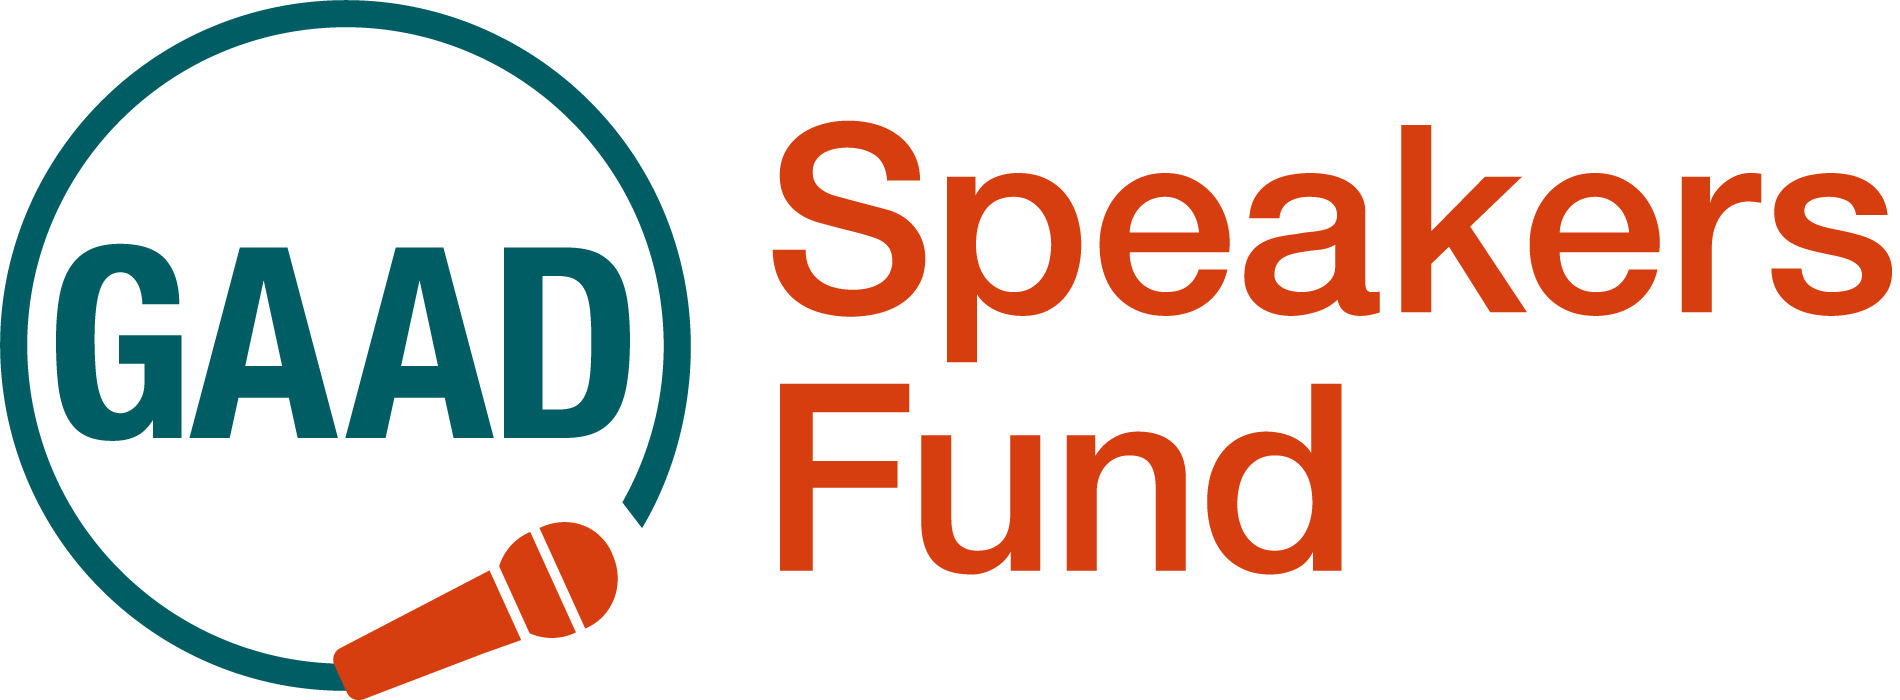 GAAD Speakers Fund